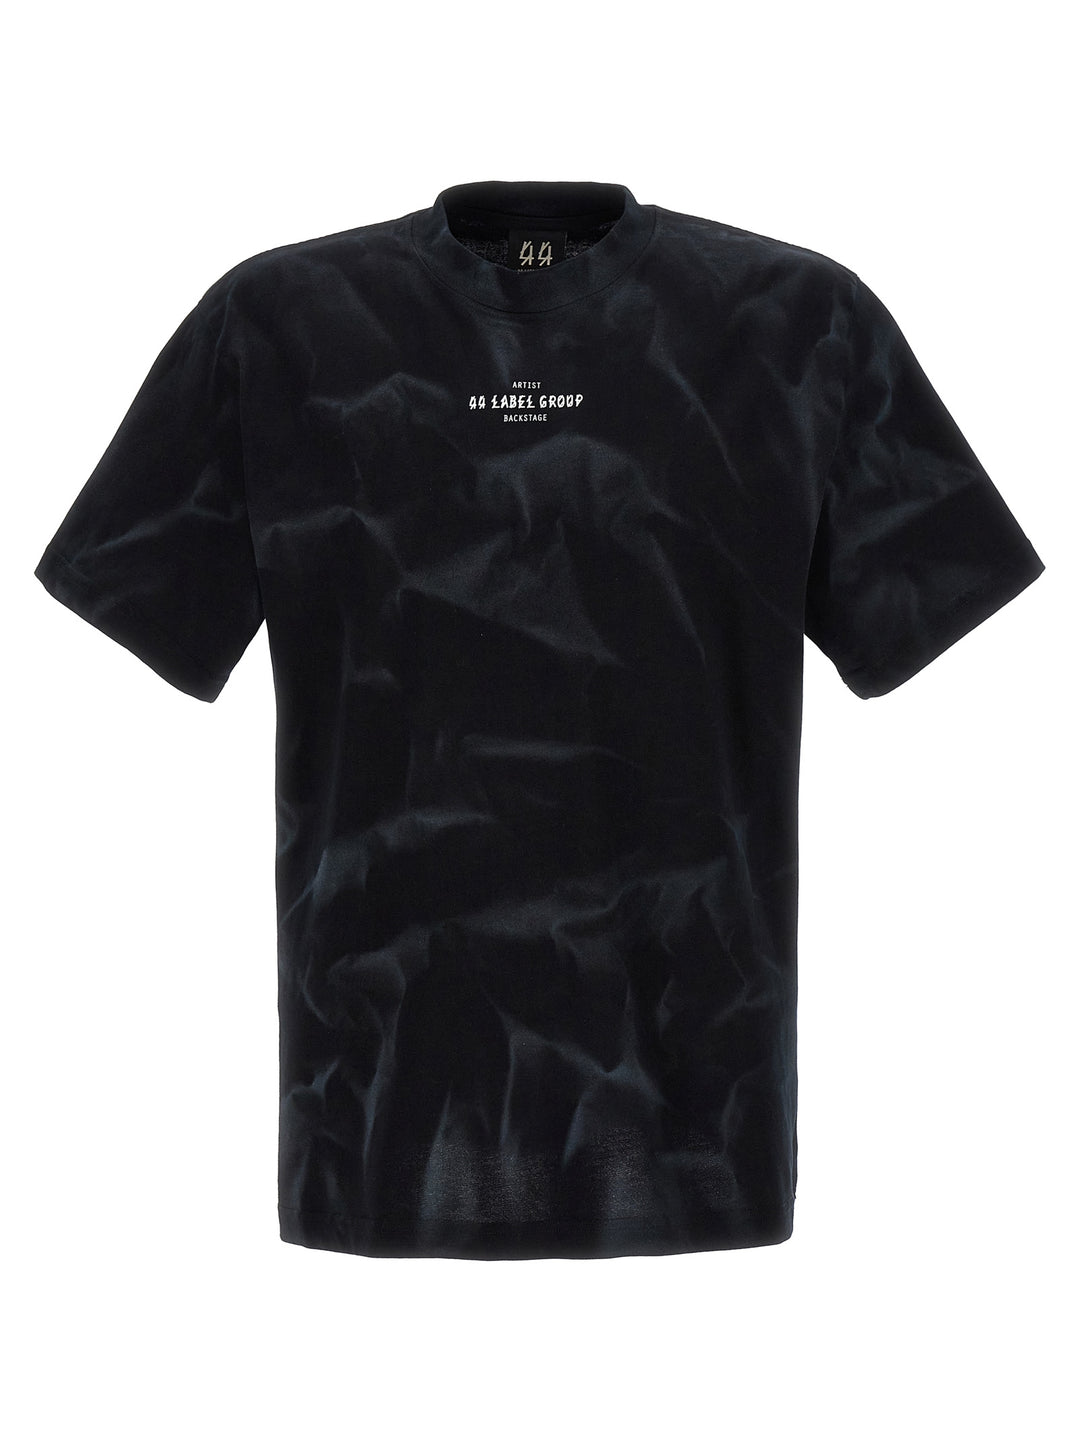 44 Smoke T Shirt Bianco/Nero